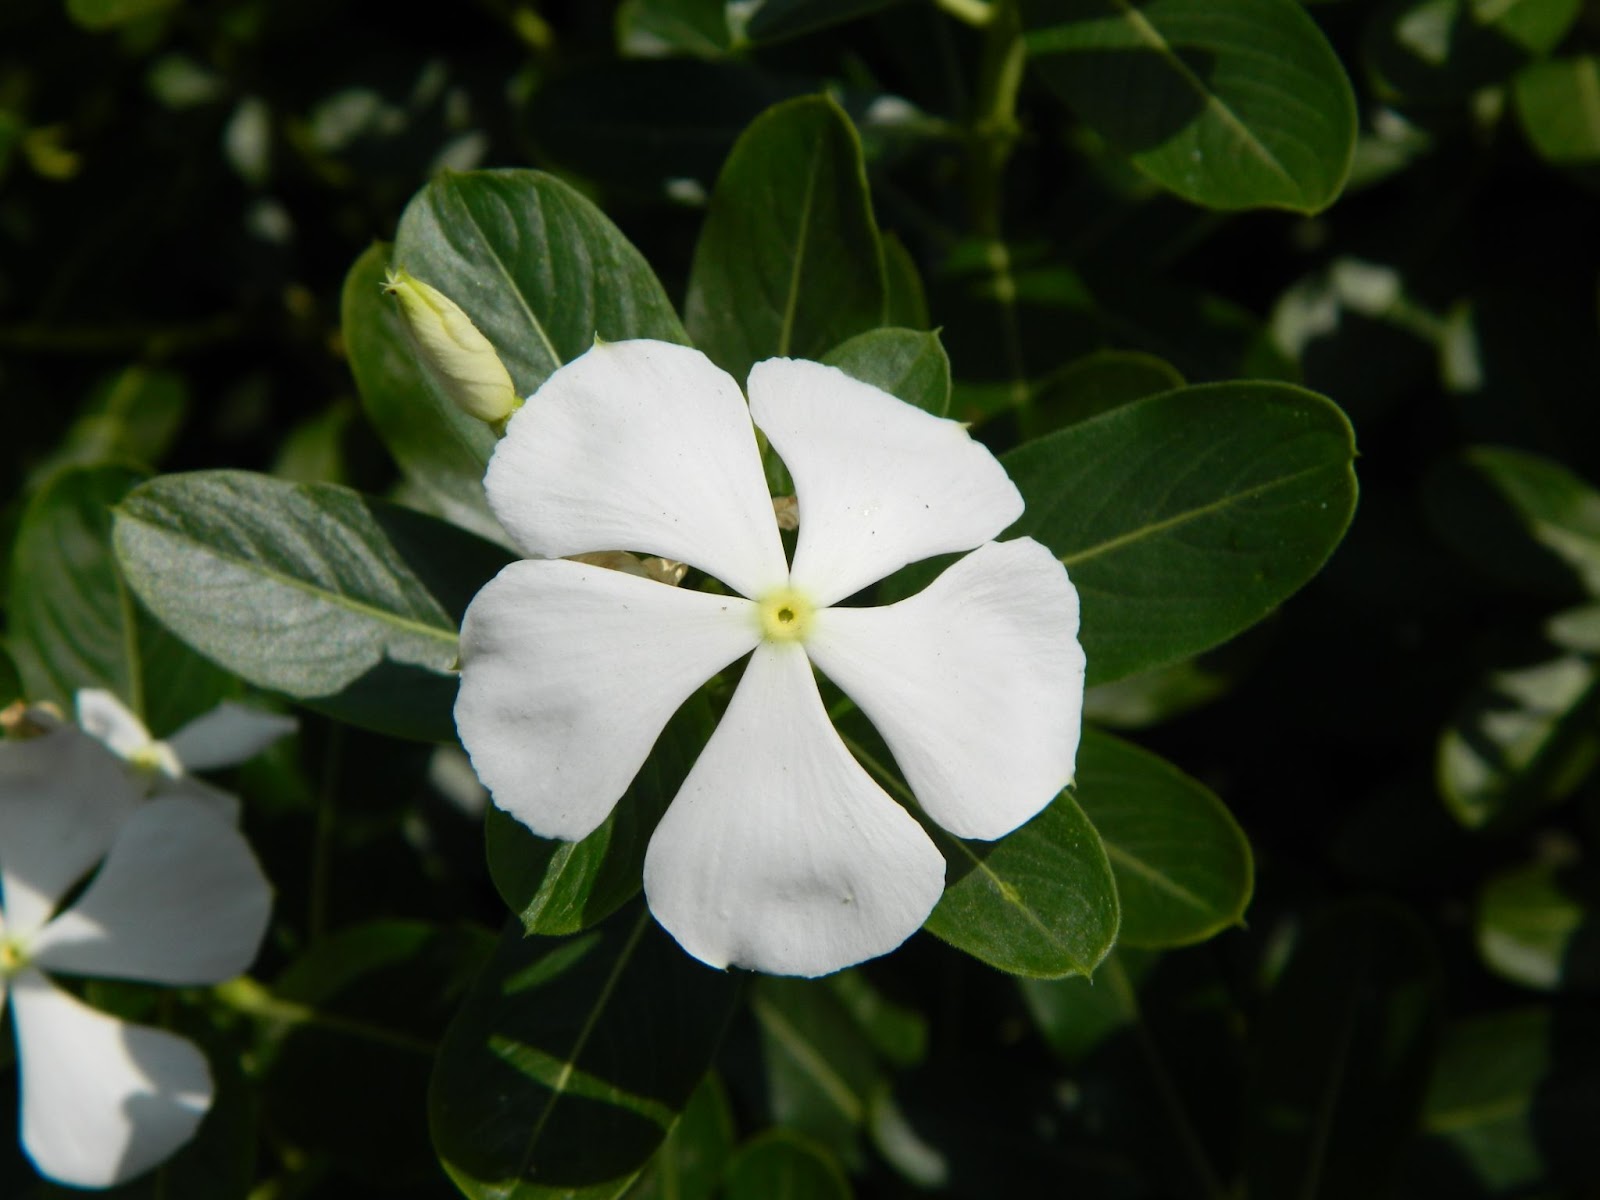 Flor branca com cinco pétalas brancas, cercada pelas folhas verdes que acompanham o seu caule.